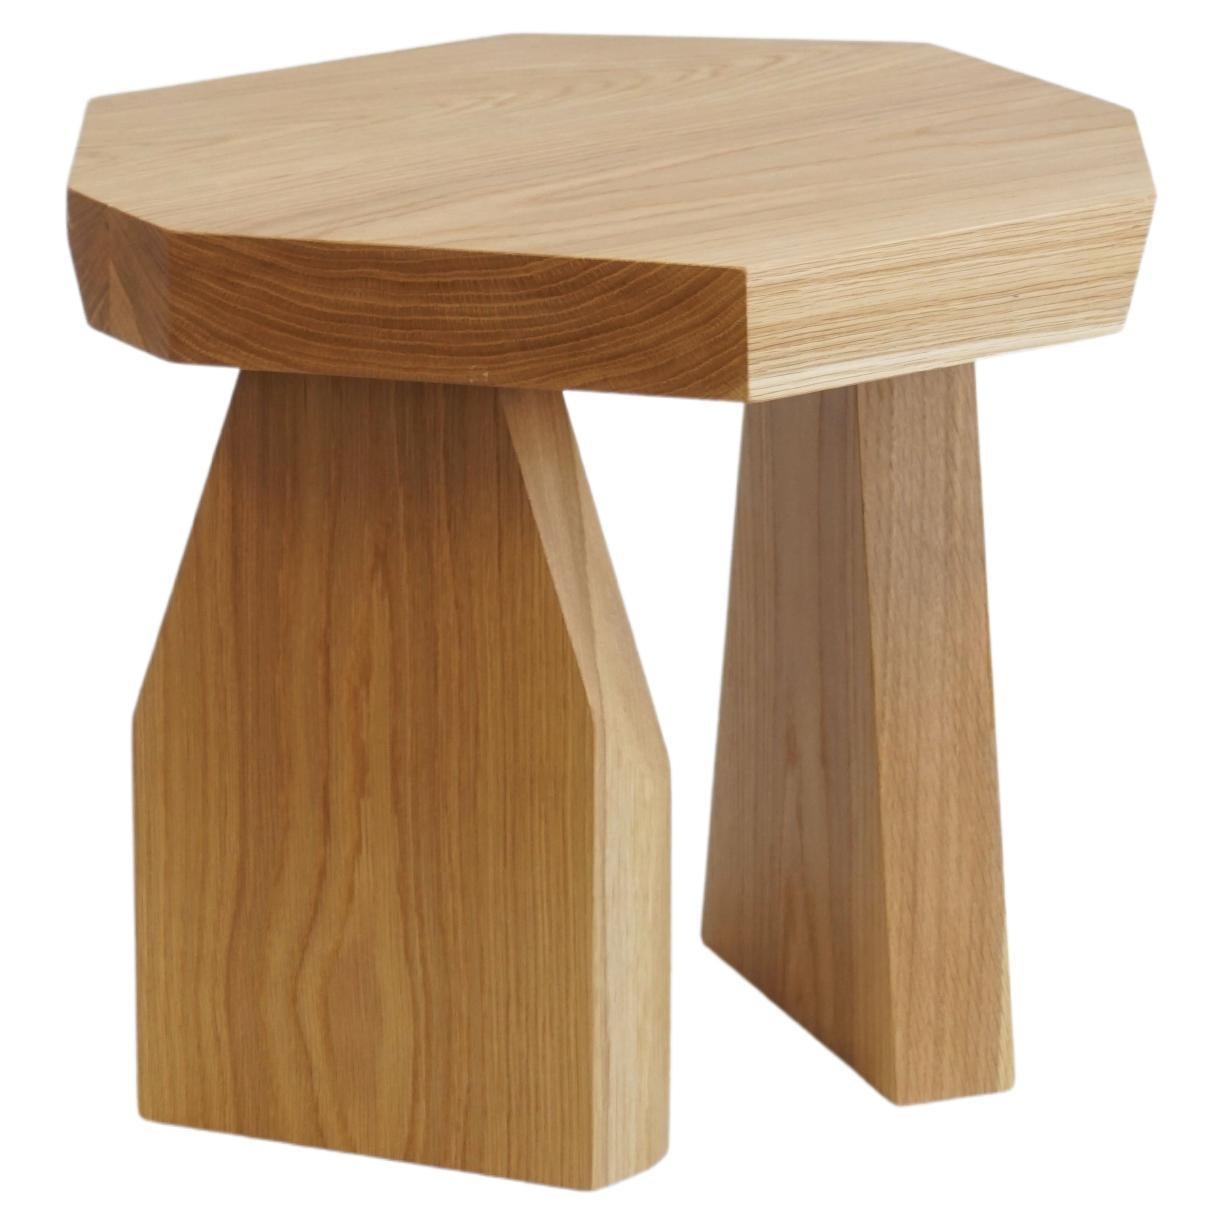 Table d'appoint ou tabouret de style moderne organique géométrique de fabrication récente.

Réalisé par Last Workshop, 2023
Chêne blanc, finition huile naturelle satinée.
Mesures : 18